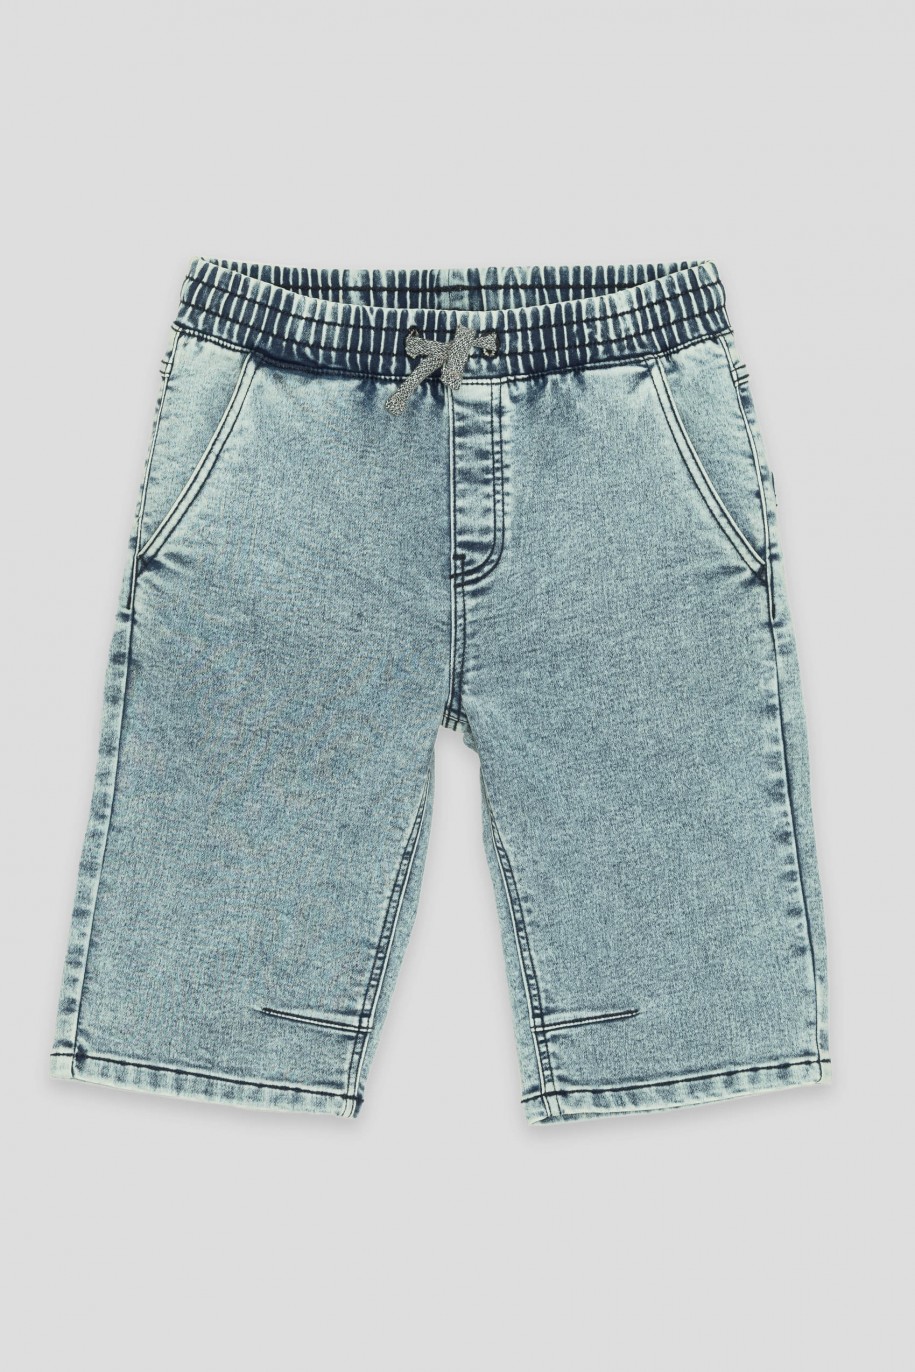 Niebieskie krótkie jeansowe spodenki na gumce - 42515